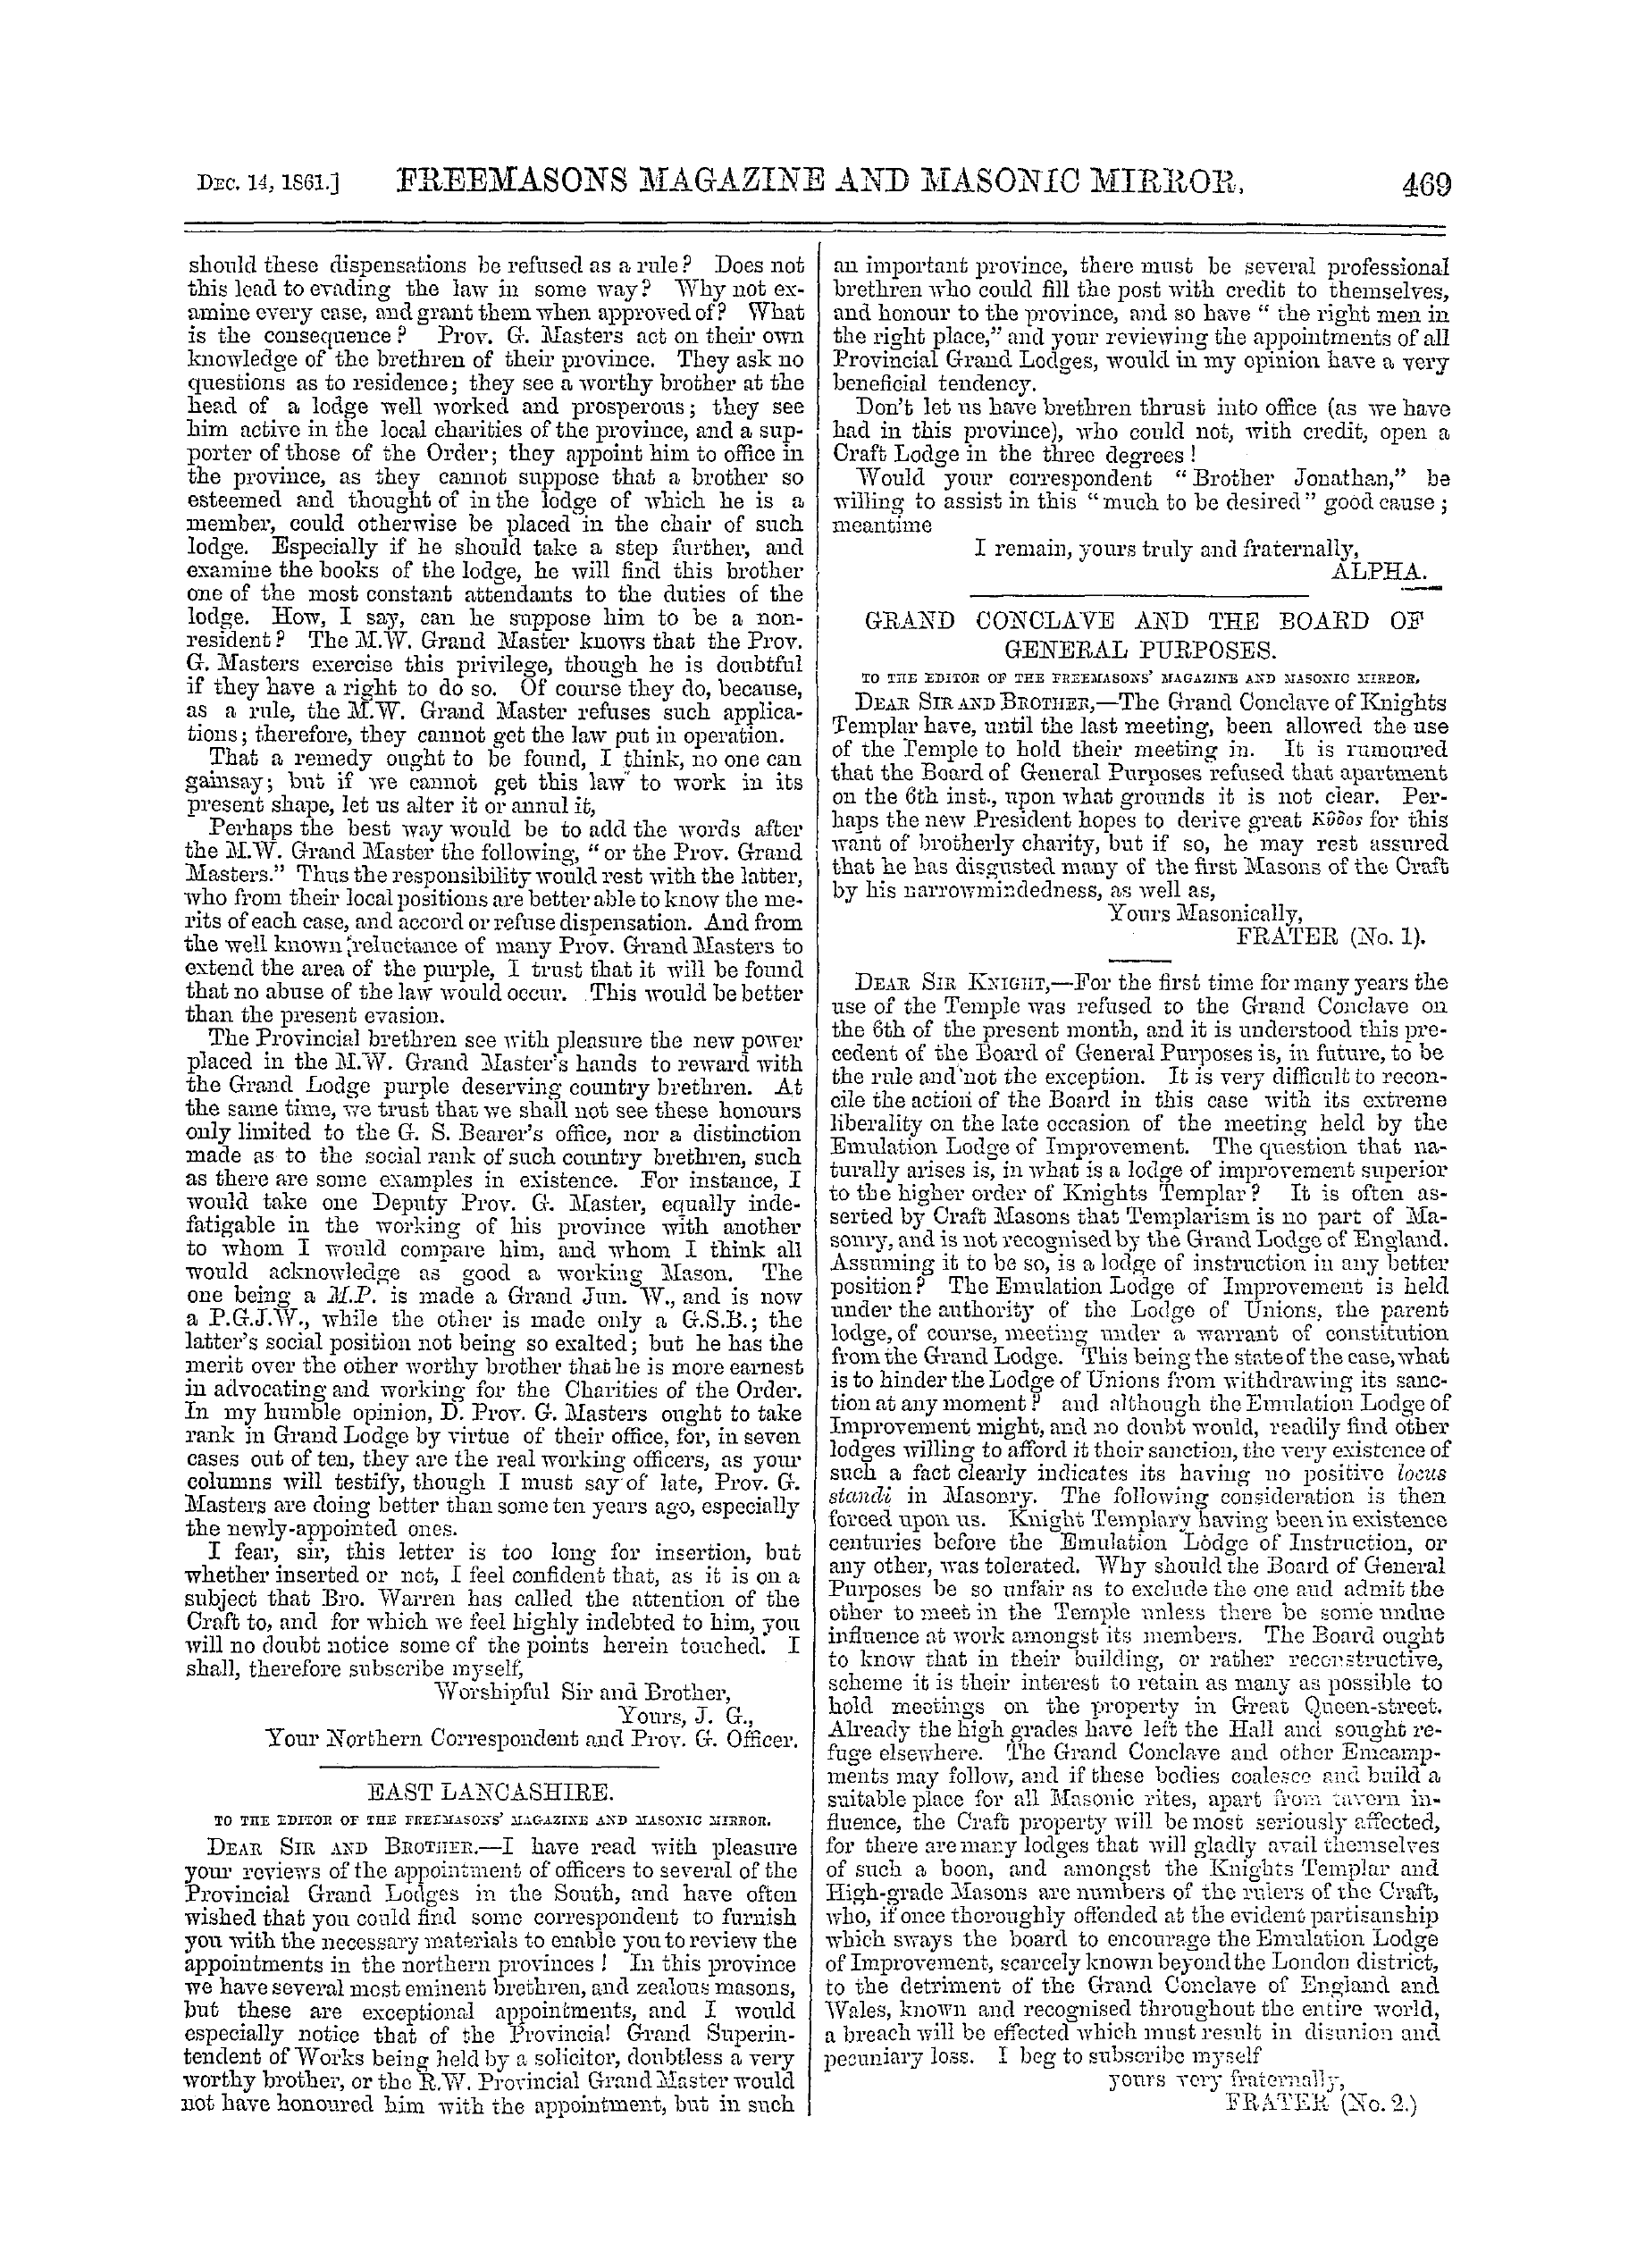 The Freemasons' Monthly Magazine: 1861-12-14 - East Lancashire.